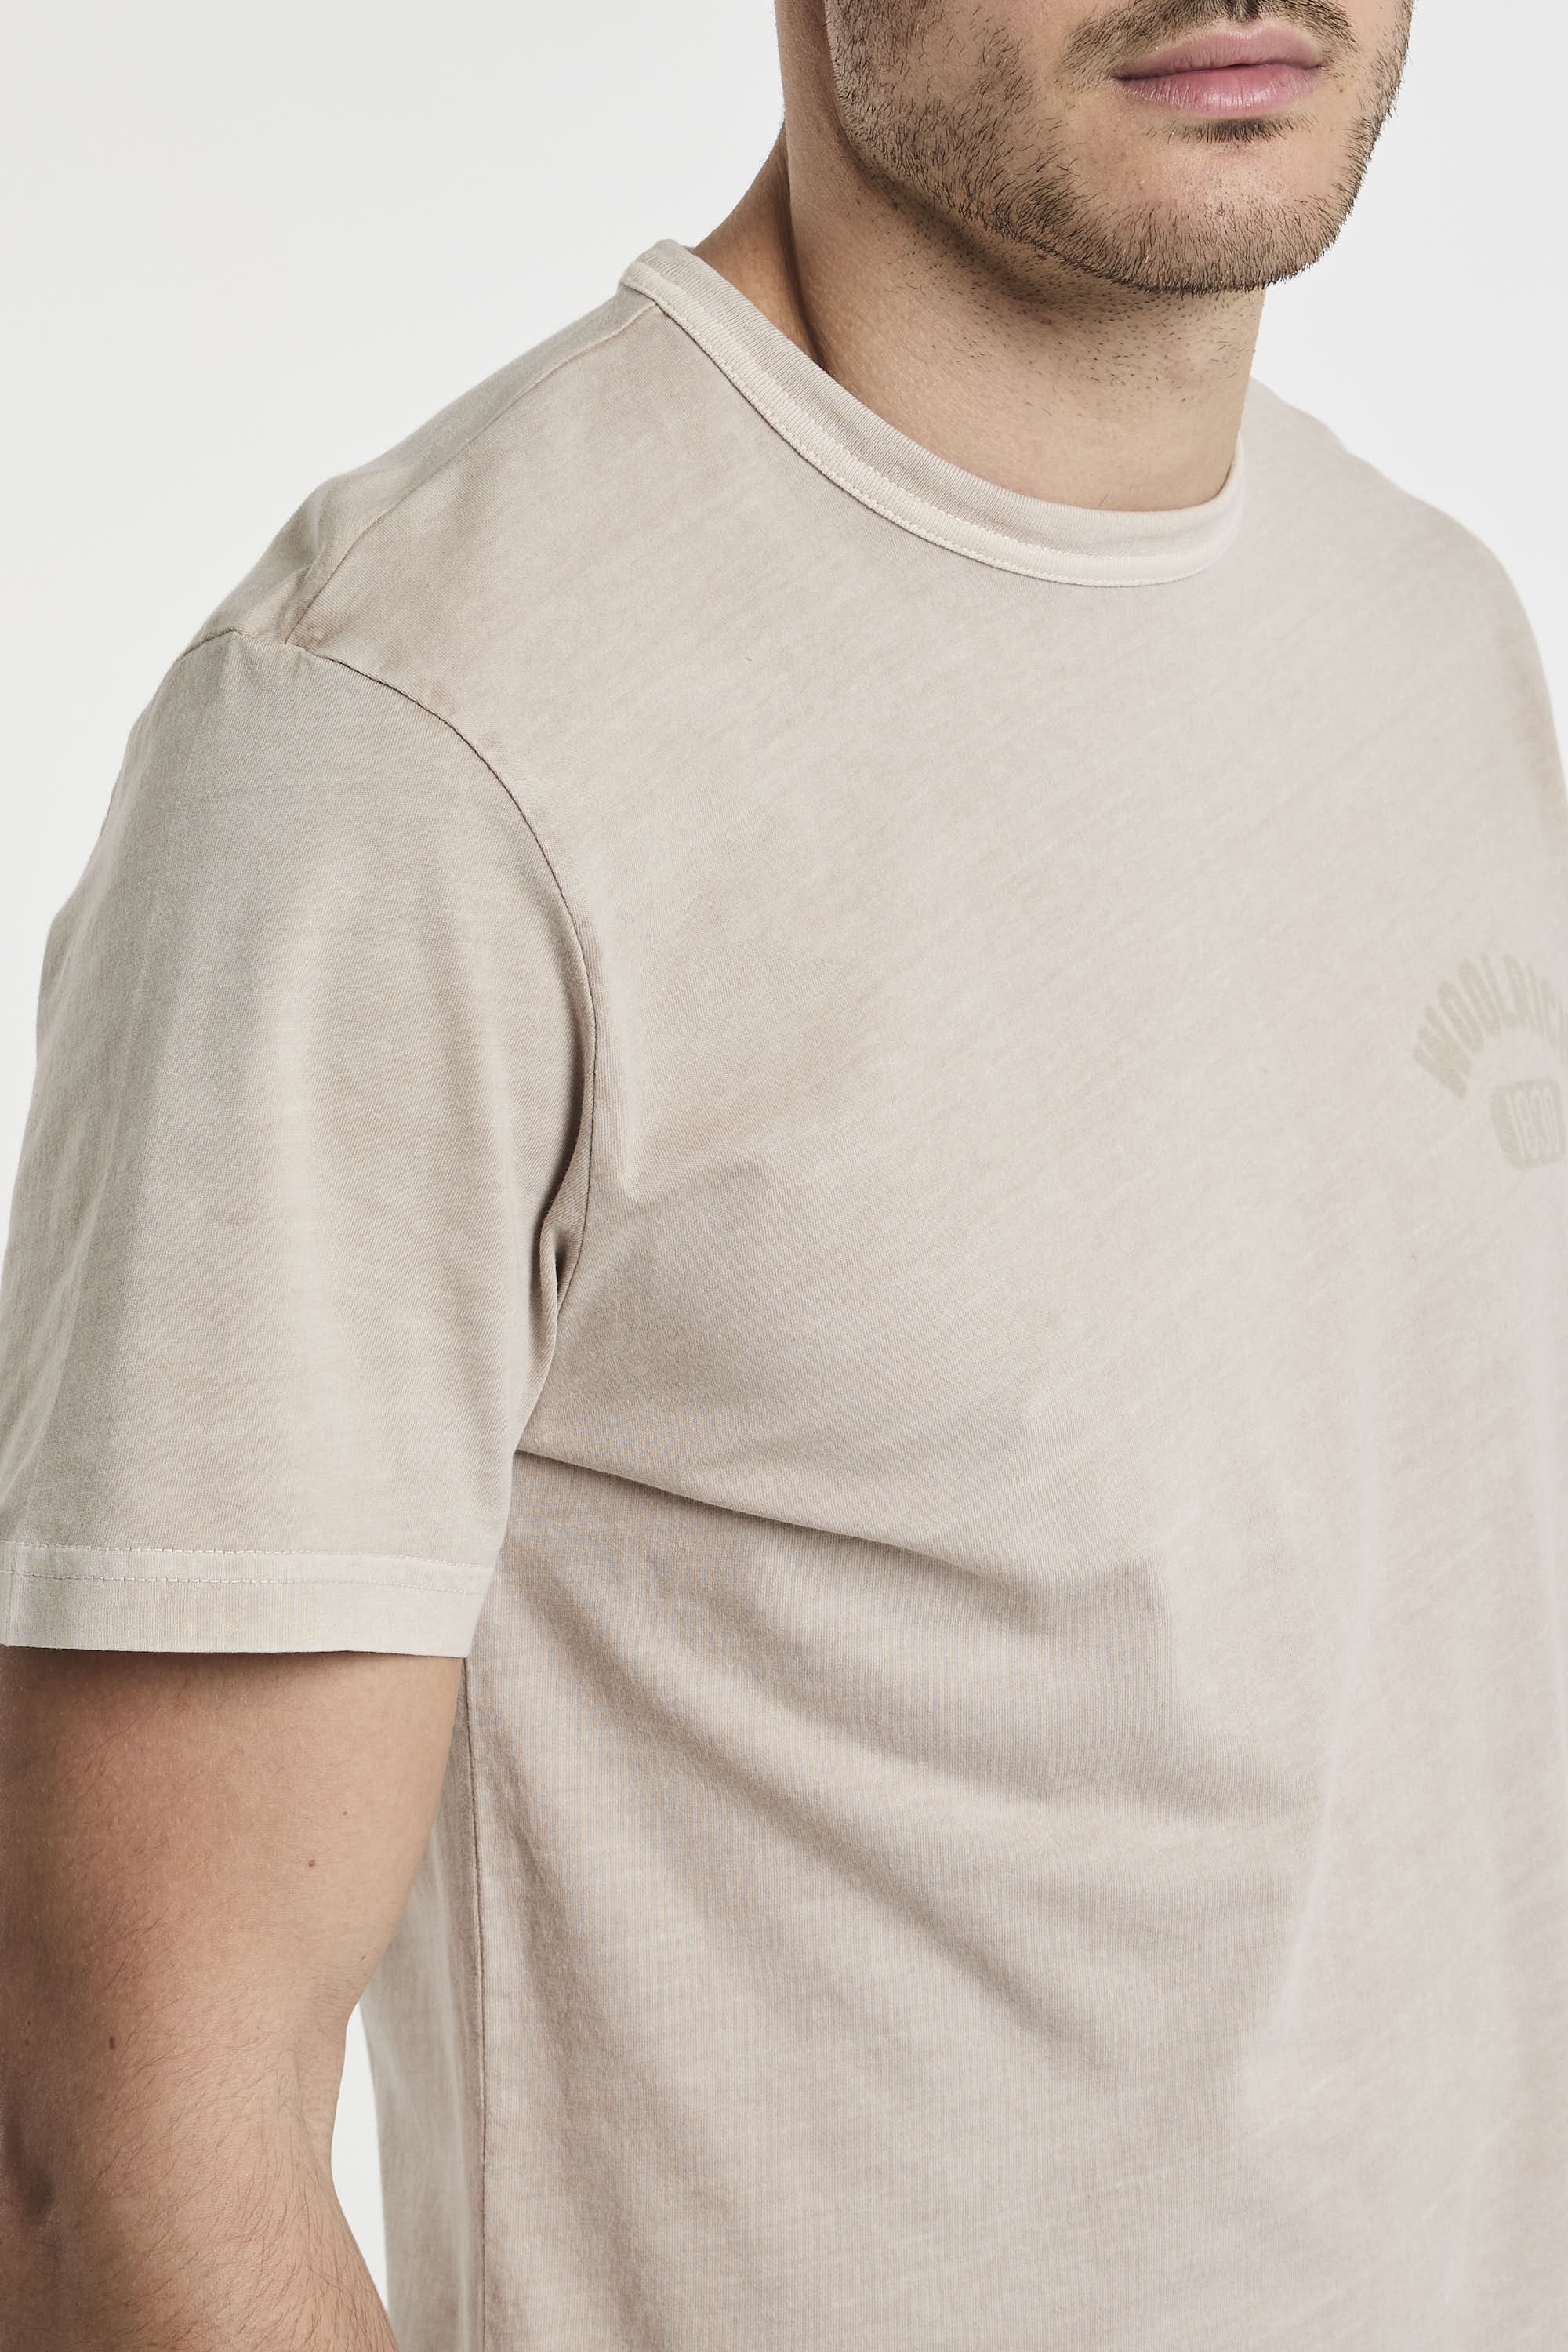 T-shirt tinta in capo in puro cotone-6